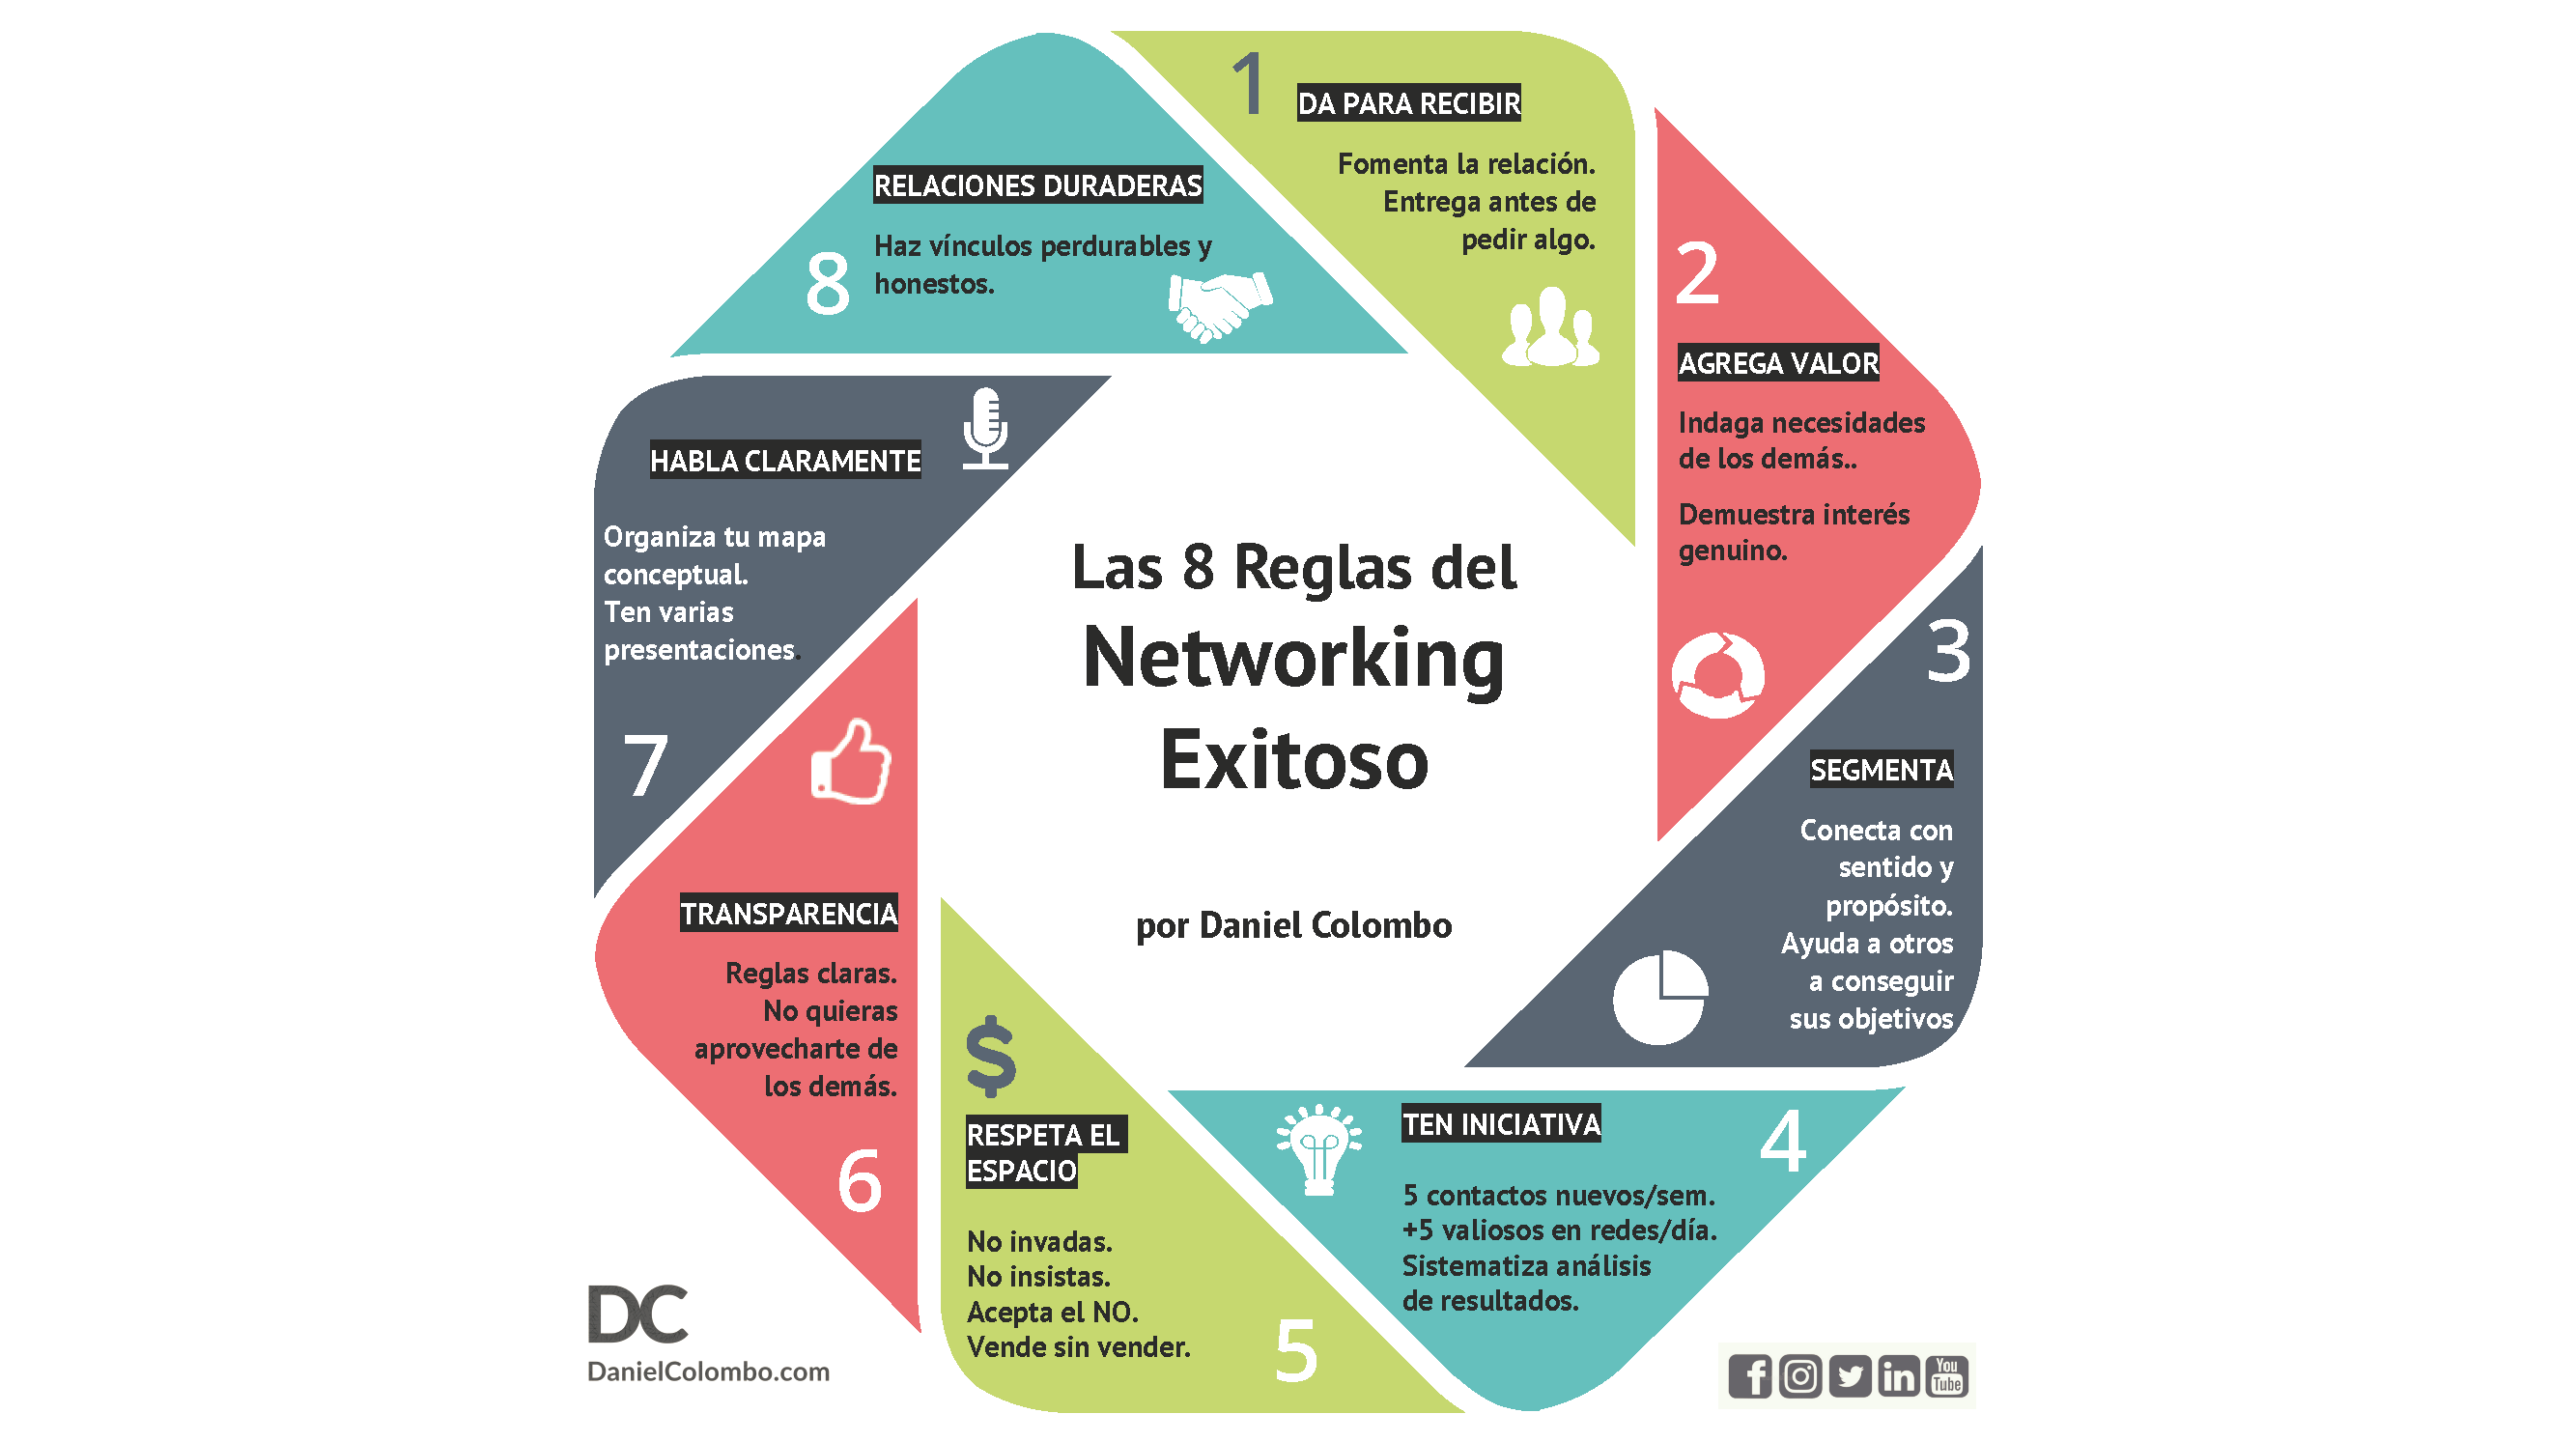 El networking se basa, esencialmente, en cultivar una red de contactos propicia para conseguir un trabajo